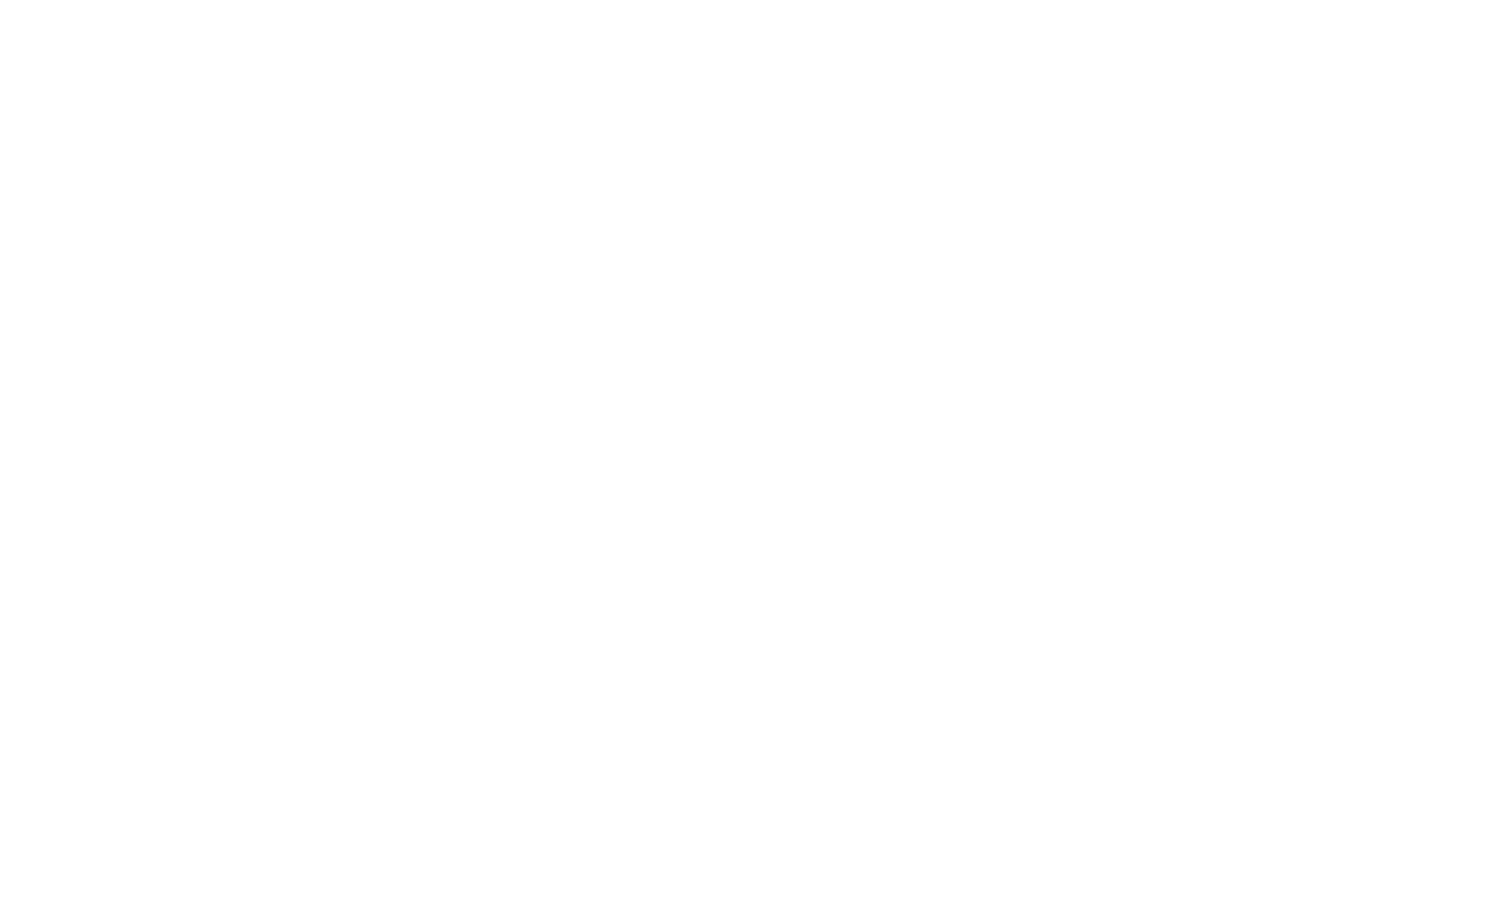 SOCIAL MINDED